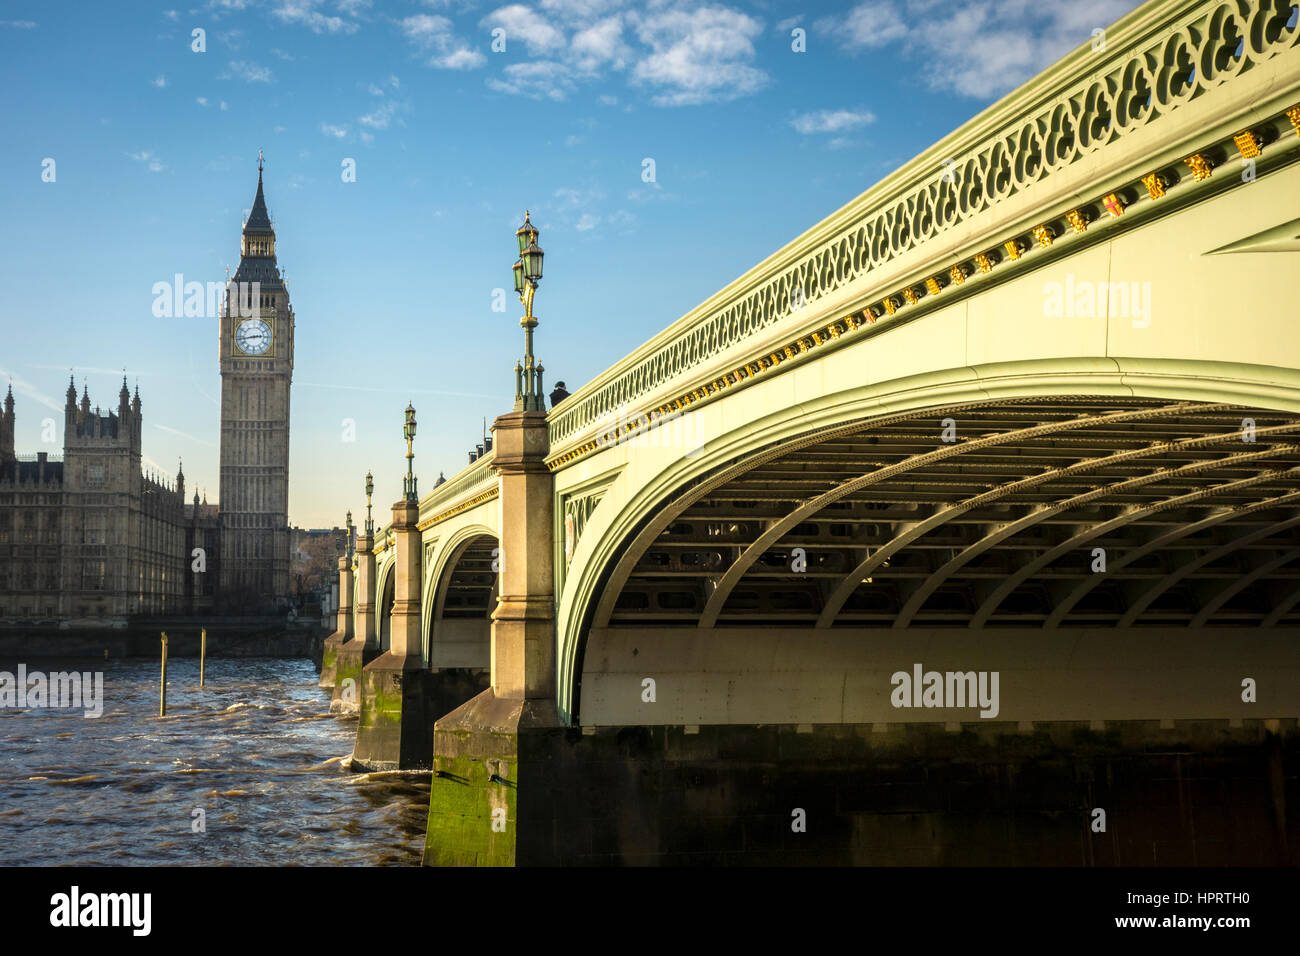 El puente de Westminster y el Palacio de Westminster con el Big Ben (Elizabeth Tower) en el fondo. Londres, Reino Unido Foto de stock